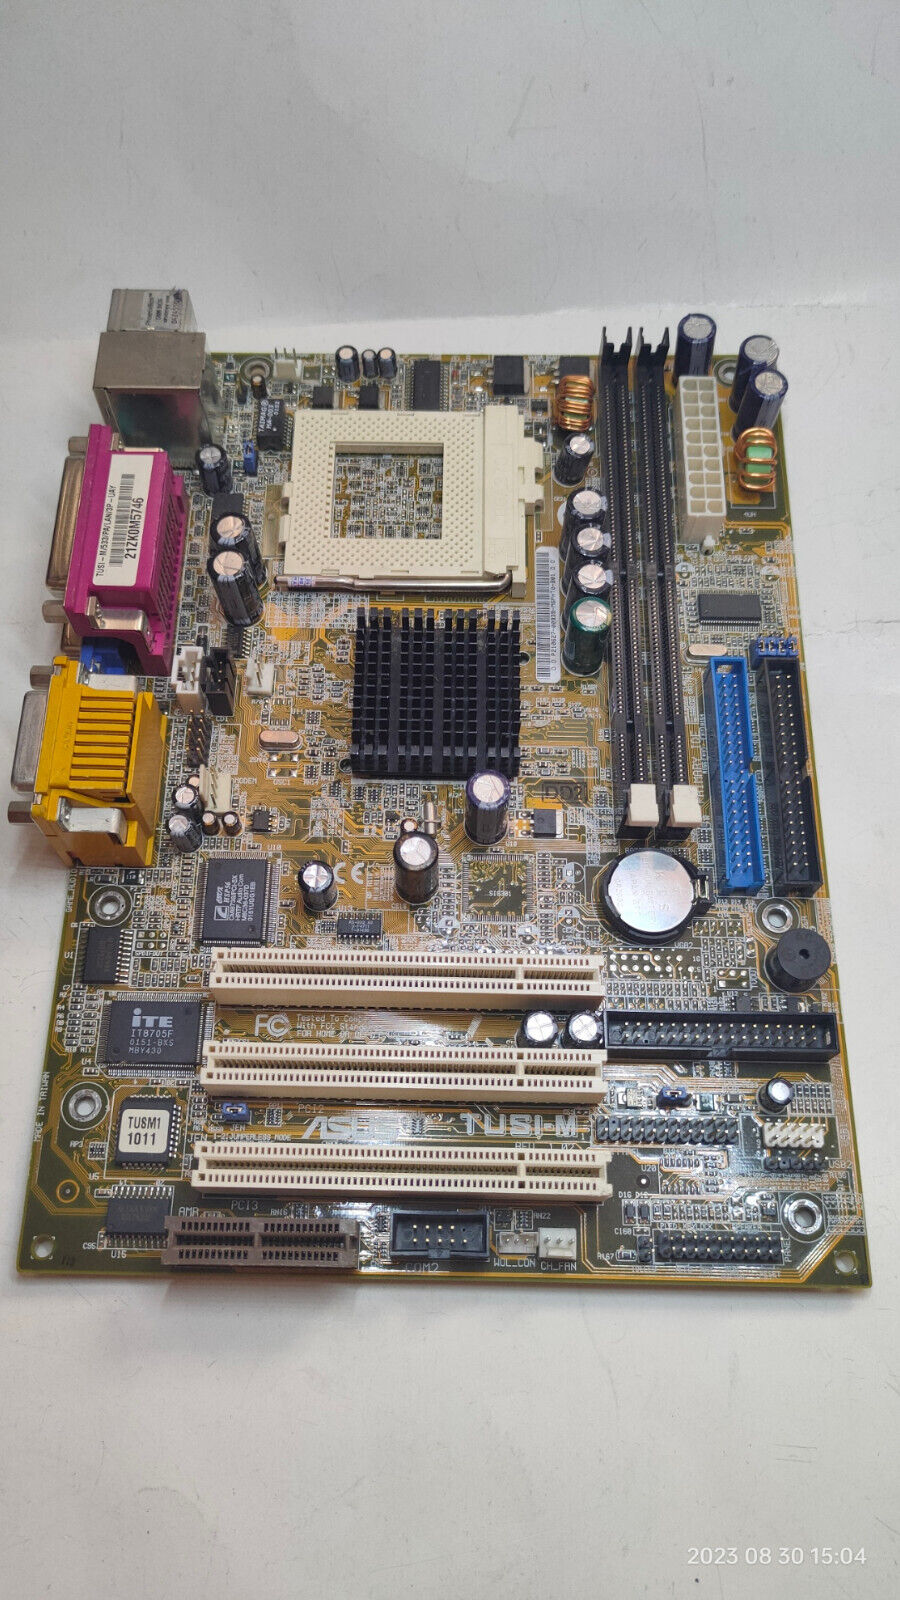 Socket 370 *Tualatin* SET ASUS TUSI-M Motherboard (SIS 630) CPU & 128 MB + Bonus